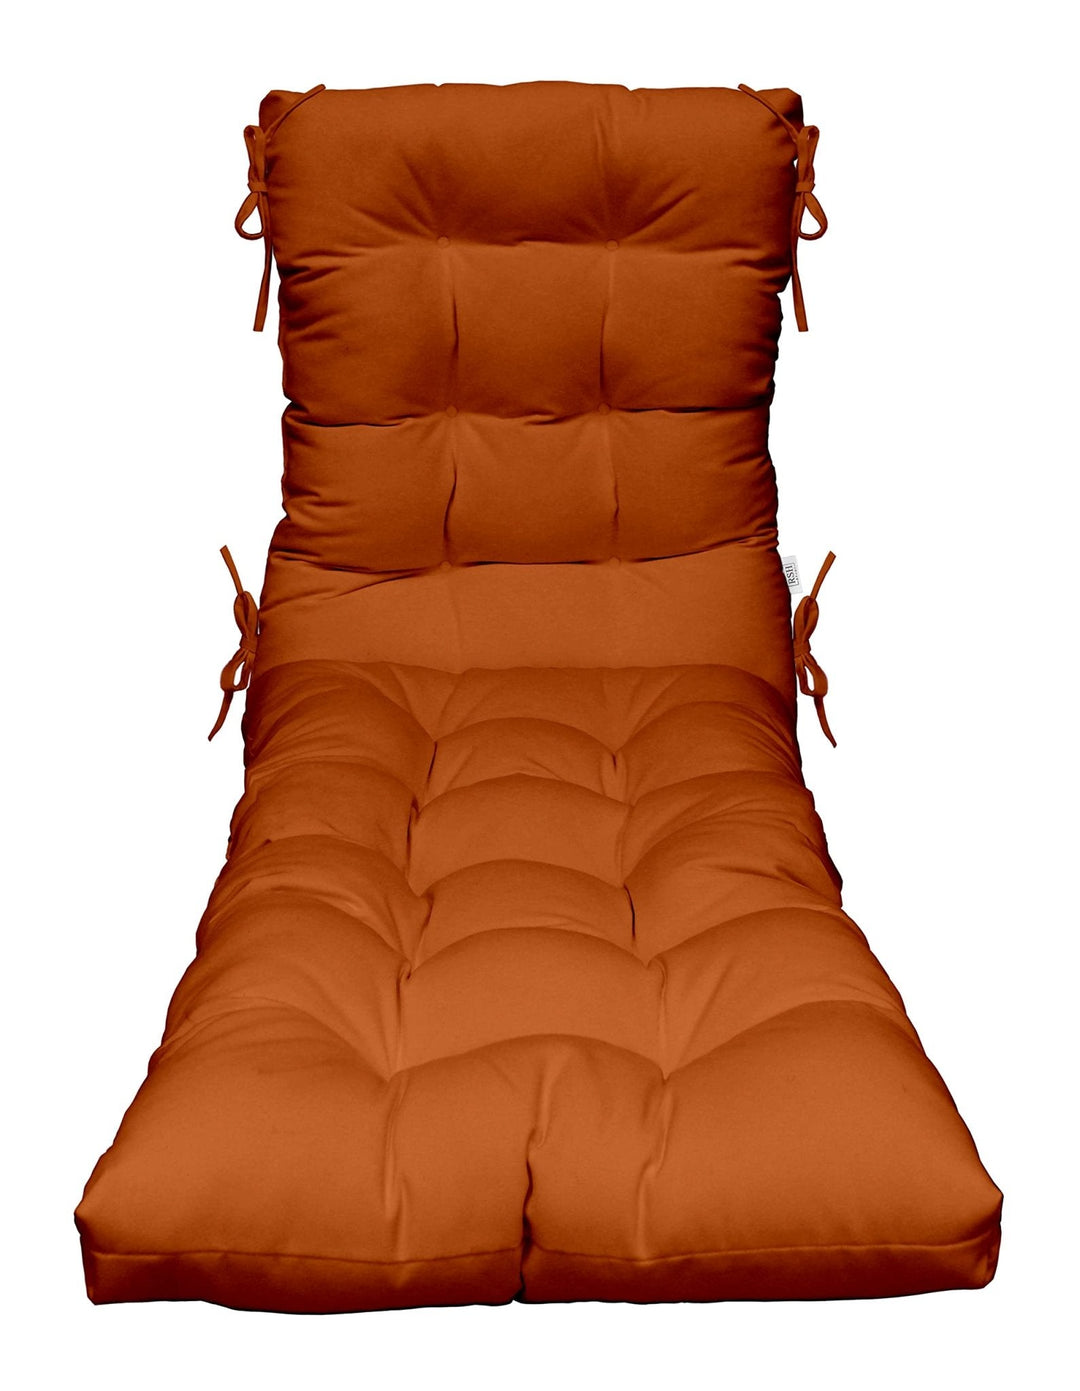 Chaise Lounge Chair Cushion | Tufted | 72" H x 22" W | Sunbrella Canvas Tuscan - RSH Decor